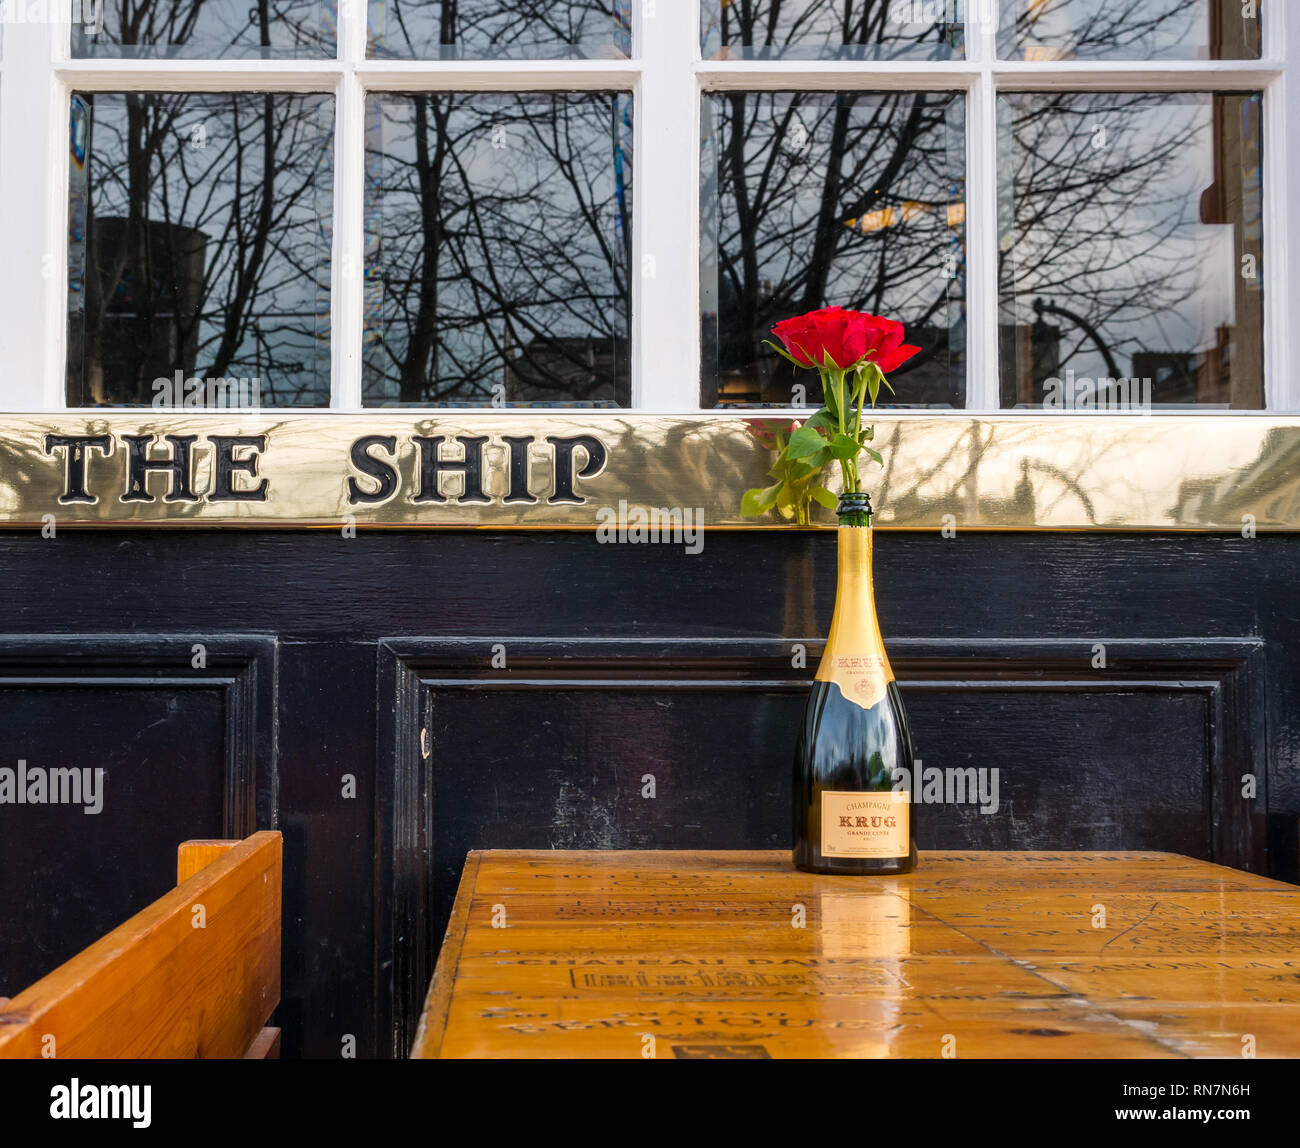 Krug Champagner Flasche mit rote Rose auf außerhalb Pflaster Tabelle, Schiff am Ufer Restaurant mit Messing name, Leith, Edinburgh, Schottland, Großbritannien Stockfoto